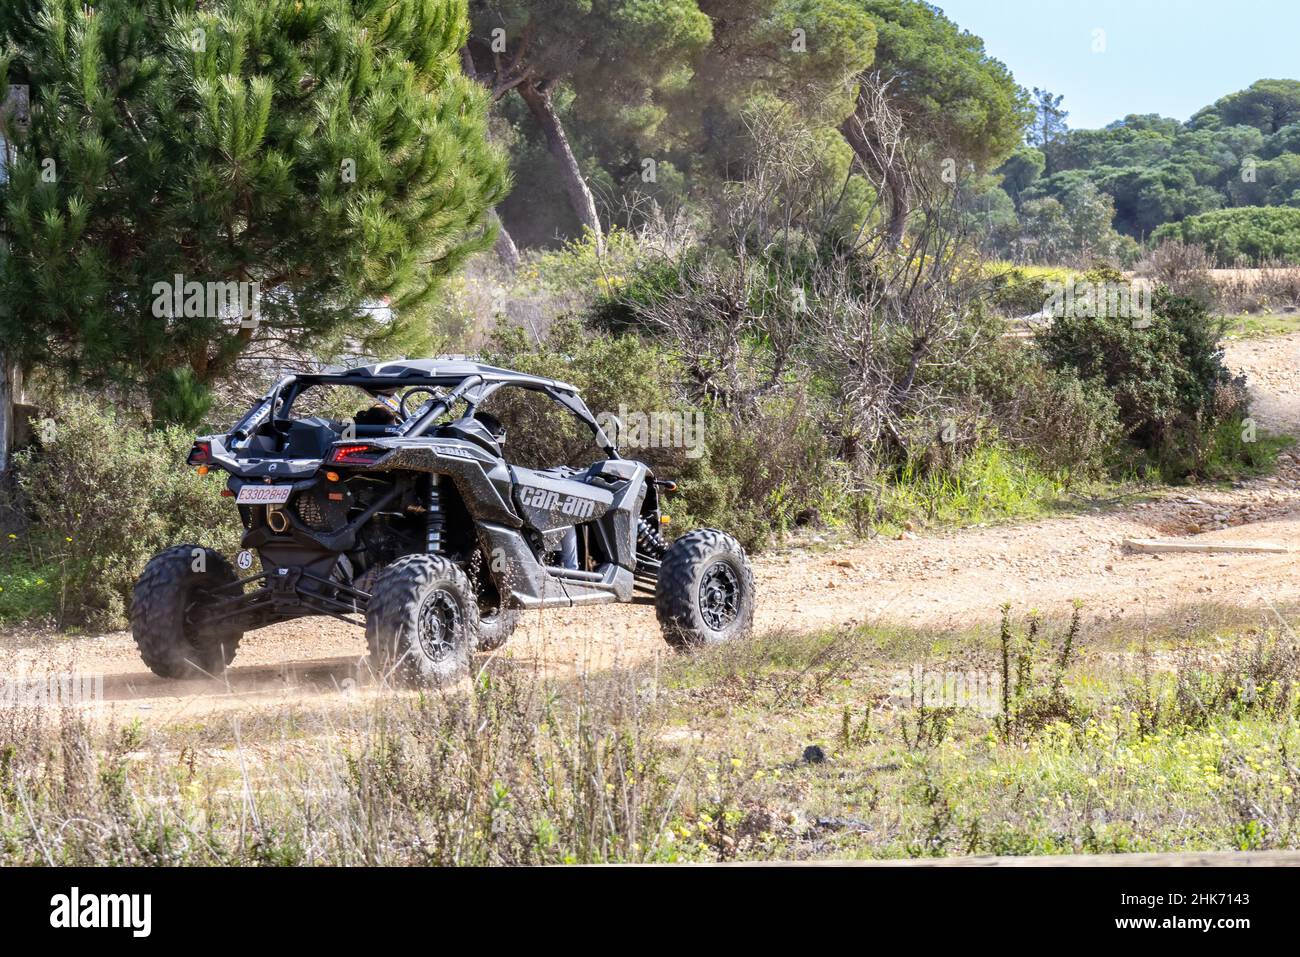 Huelva, Espagne - 29 janvier 2022: CAN-Am MAVERICK, véhicule tout terrain noir qui fonctionne sur un sentier forestier Banque D'Images